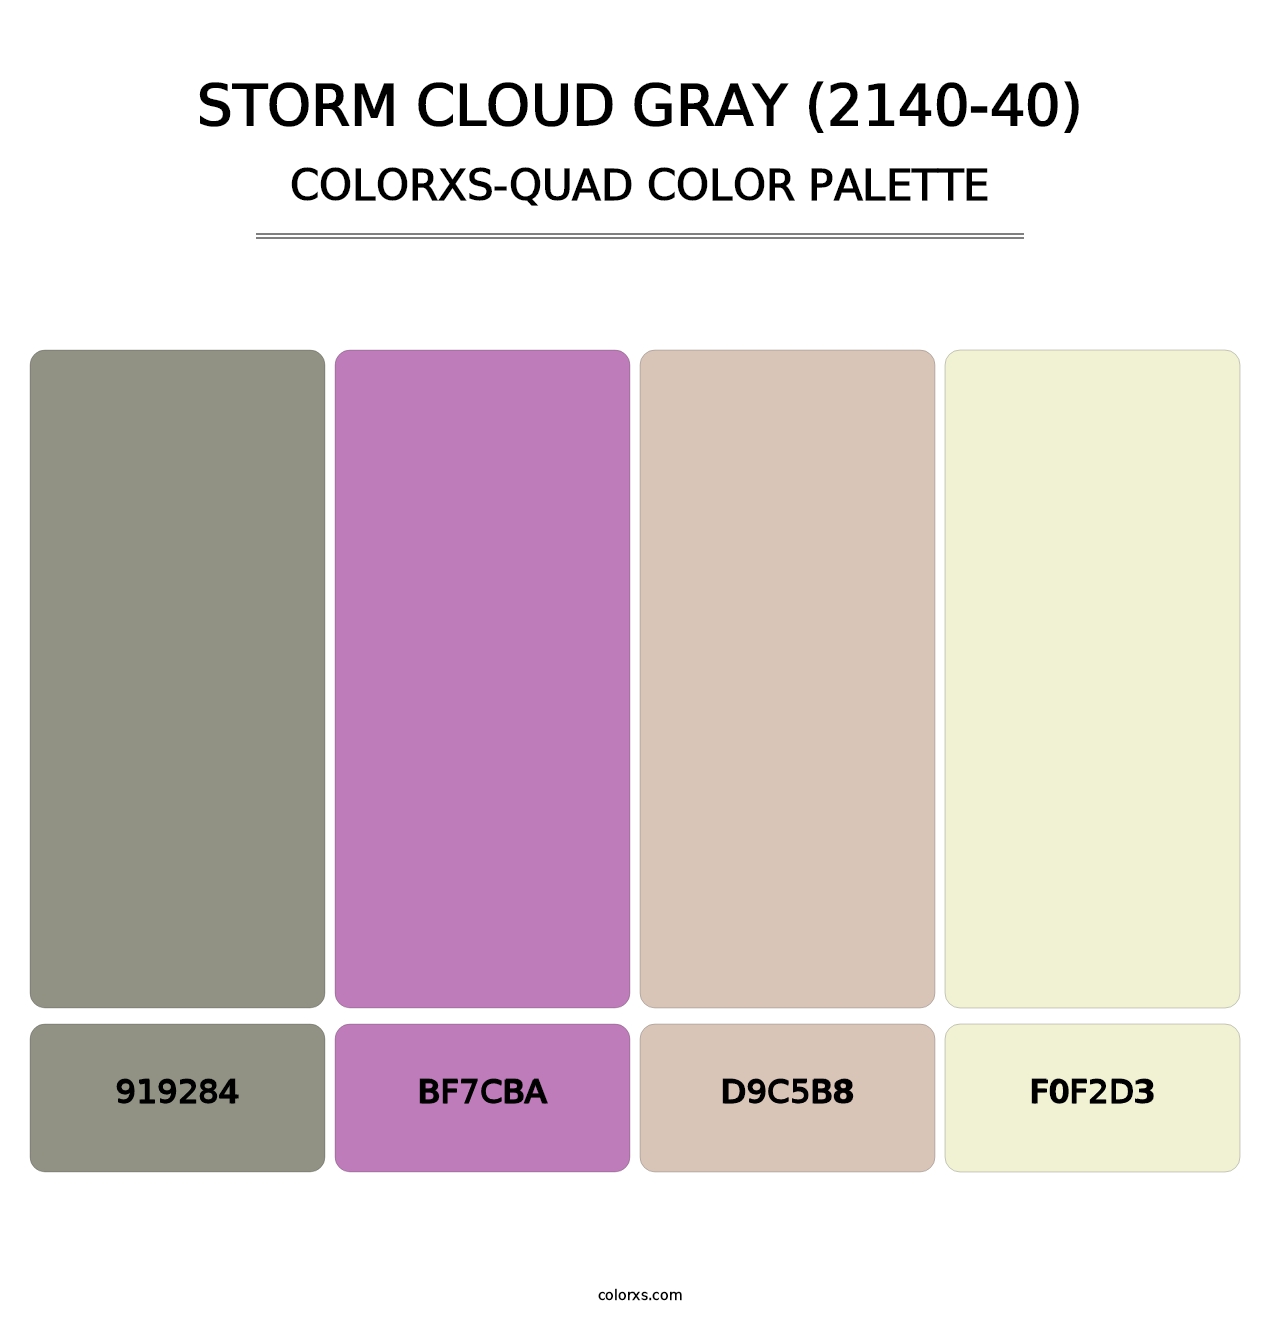 Storm Cloud Gray (2140-40) - Colorxs Quad Palette